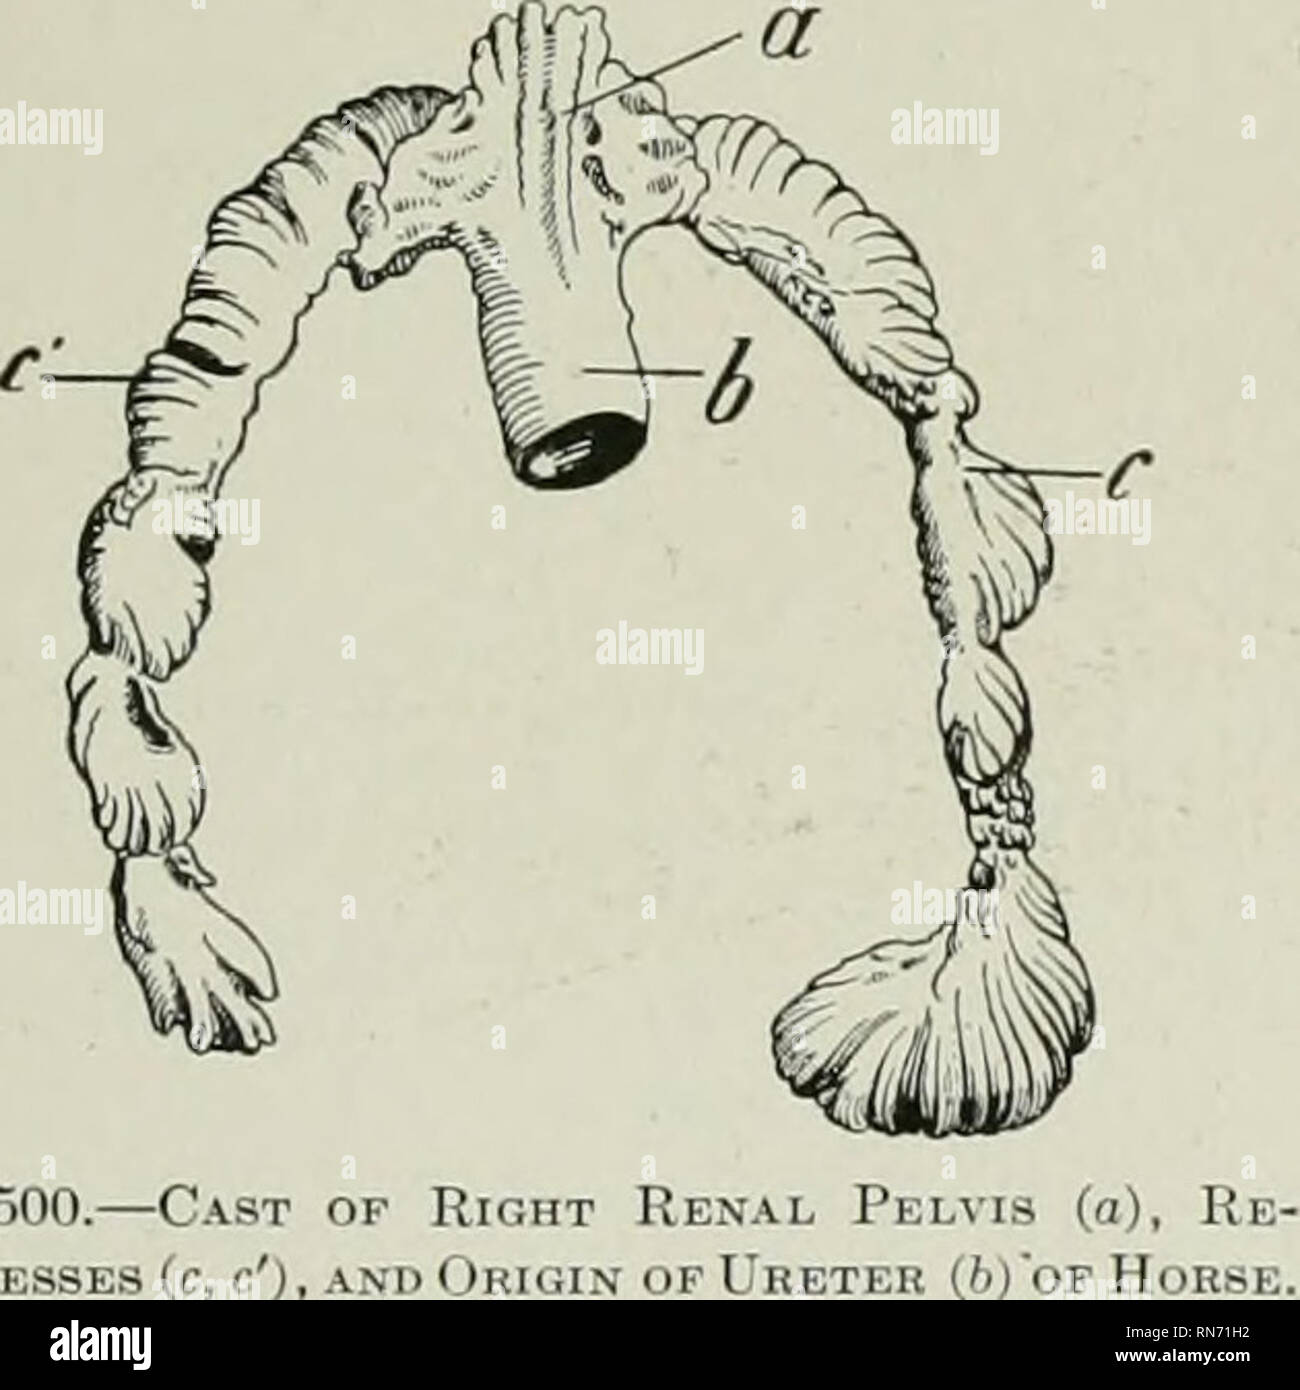 . L'anatomie de l'animal domestique. Anatomie vétérinaire. Les reins 559 Examen avec une lentille poche montre que le cortex est imparfaitement divisé en lobules (Lobuli corticales). Chaque lobule est constitué d'un jeu axial rayonnent une partie (paragraphes radiata), entouré d'une partie alambiquée (Pars convoluta). L'ancienne apparaissent comme ray-comme prolongements de la liaison des pyramides (donc appelé aussi medul- lary rayons x), et se composent essentiellement d'étroites, droite ou légèrement flexueuses séminifères (membres des boucles de Henle). La partie compliquée est d'aspect granuleux, et est composée en grande partie de l'insuffisance rénale corpus Banque D'Images